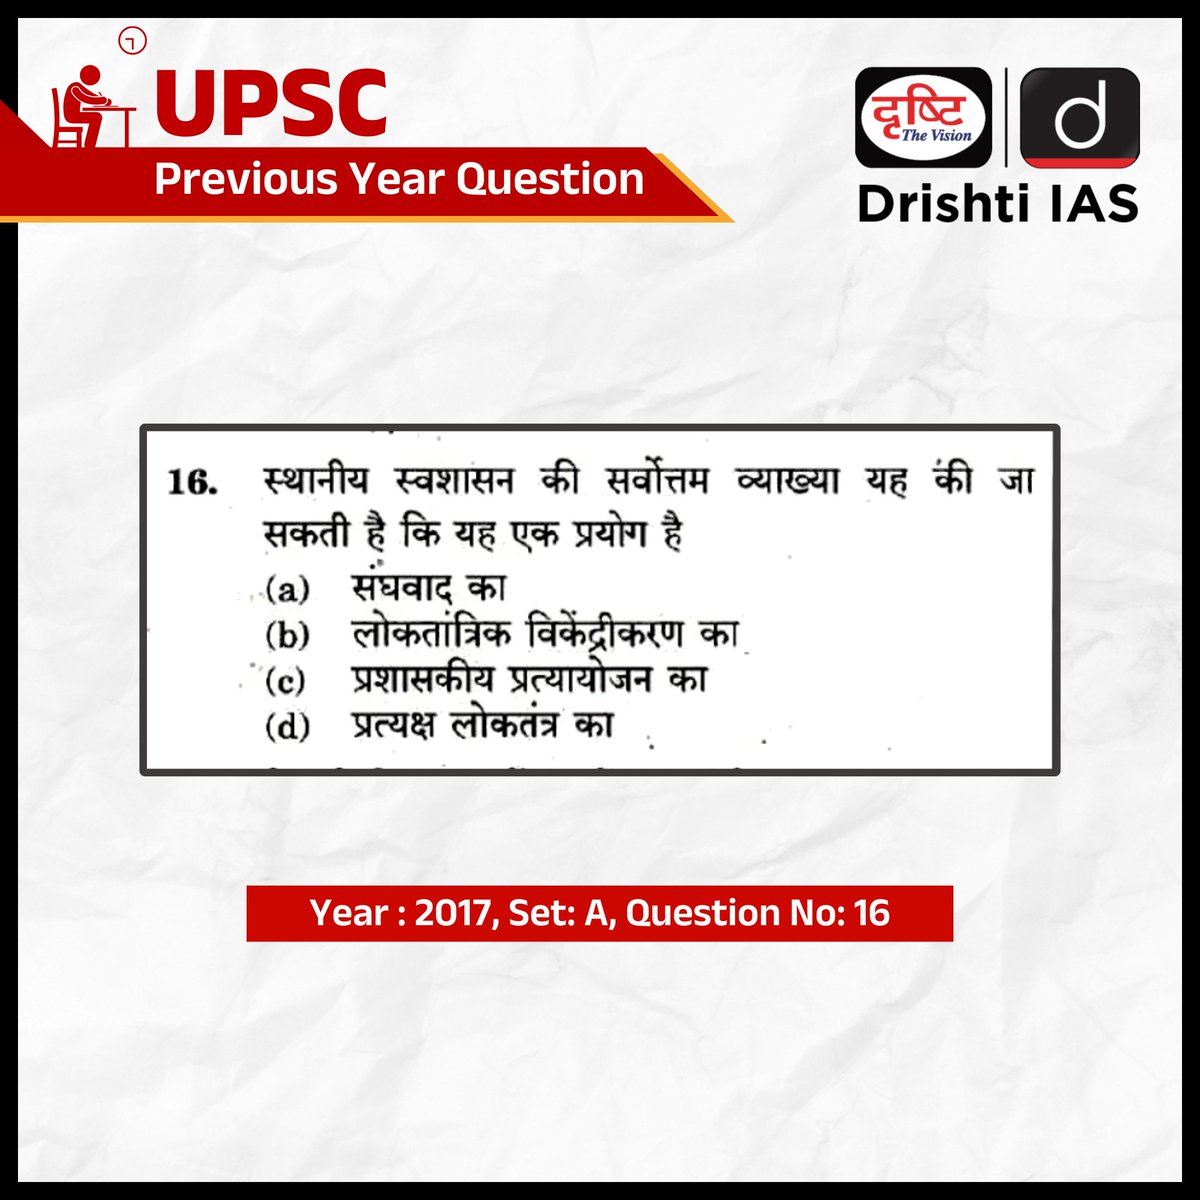 सिविल सेवा प्रारंभिक परीक्षा- 2017 हम इस प्रश्न का सही उत्तर अगले दिन कमेंट बॉक्स में पिन करेंगे। सिविल सेवा प्रारंभिक परीक्षा- 2024 के लिये हमारा “IAS प्रिलिम्स (G.S) लाइव ऑनलाइन” कोर्स उपलब्ध है। अधिक जानकारी के लिये इस लिंक पर जाएँ: drishti.xyz/OC-IAS-GSF-HN #UPSCPYQ